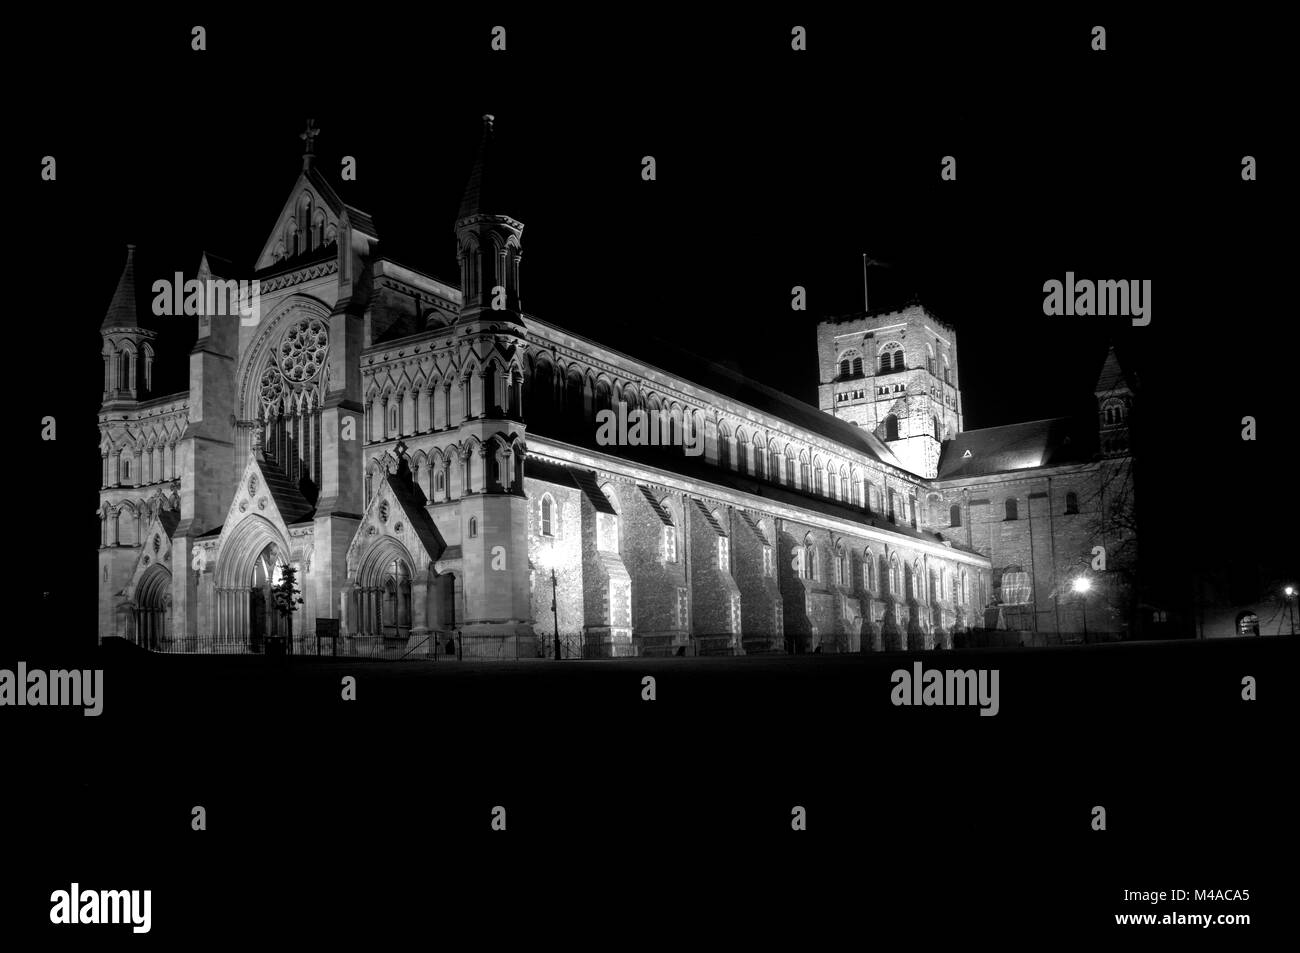 St Albans Cathedral, St Albans, Hertfordshire, England, UK Banque D'Images